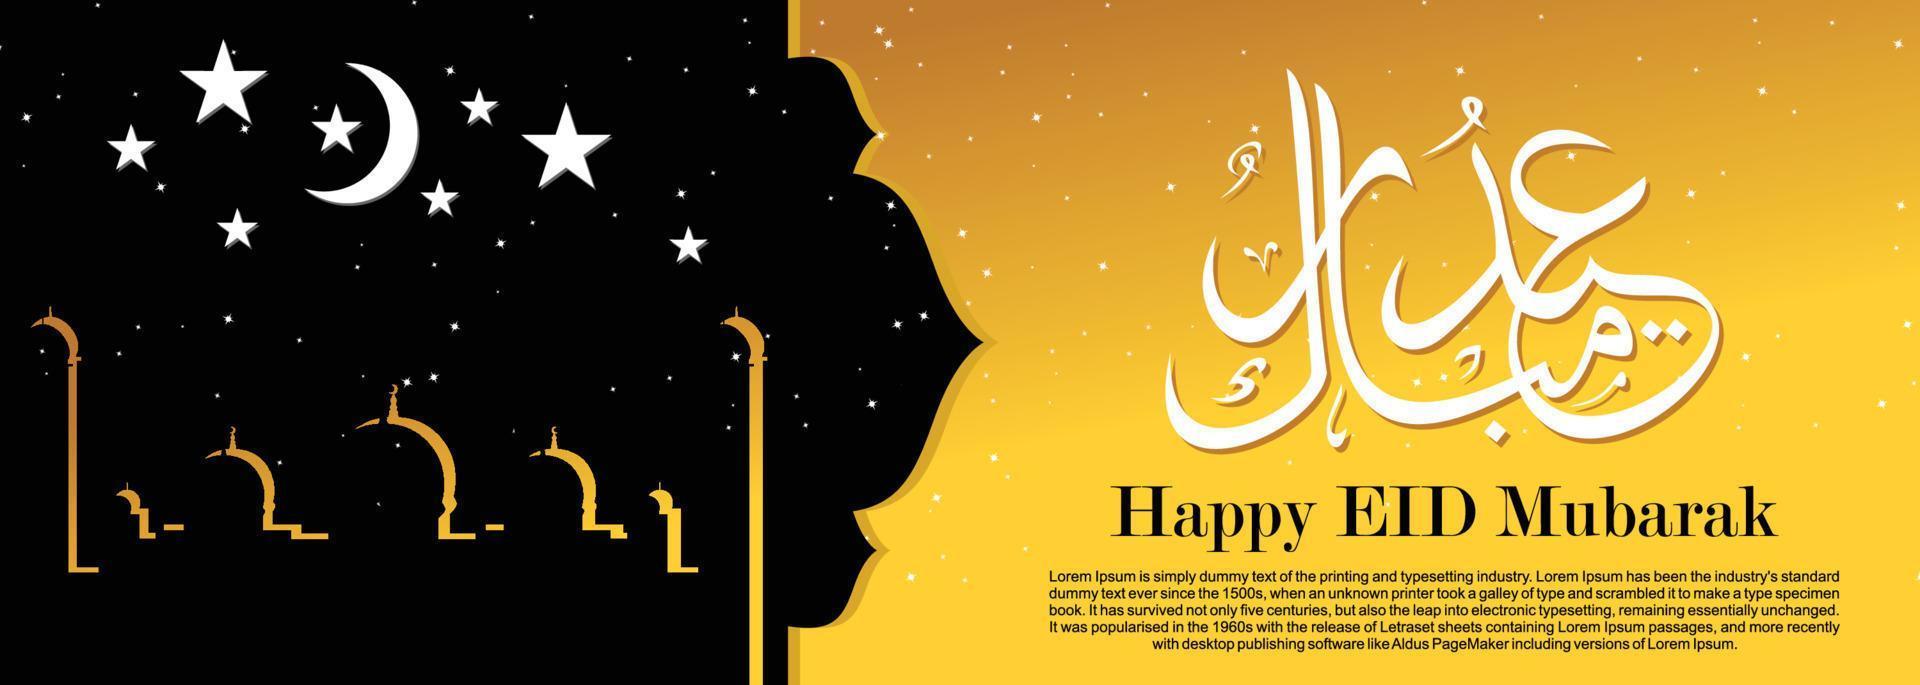 fond islamique eid mubarak, illustration de bannière happy eid mubarak, carte de voeux islamique religion célébration musulmane. calligraphie arabe moderne vecteur